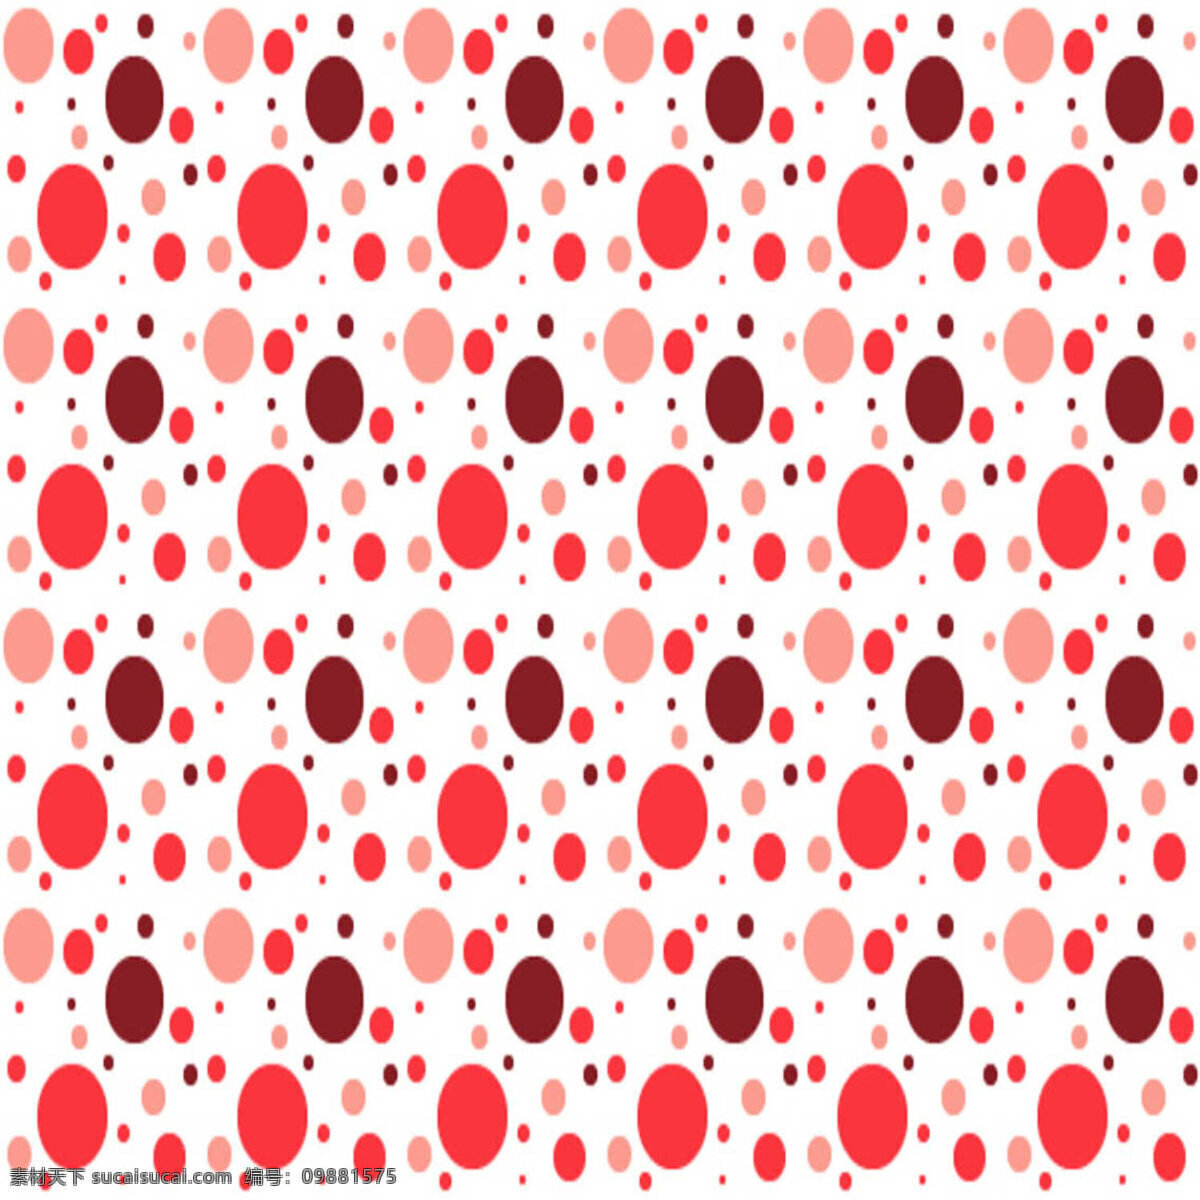 红色 斑点 背景素材 彩色 线条 背景 分隔线条素材 线条背景素材 模糊 效果 黑白 画 背景图片